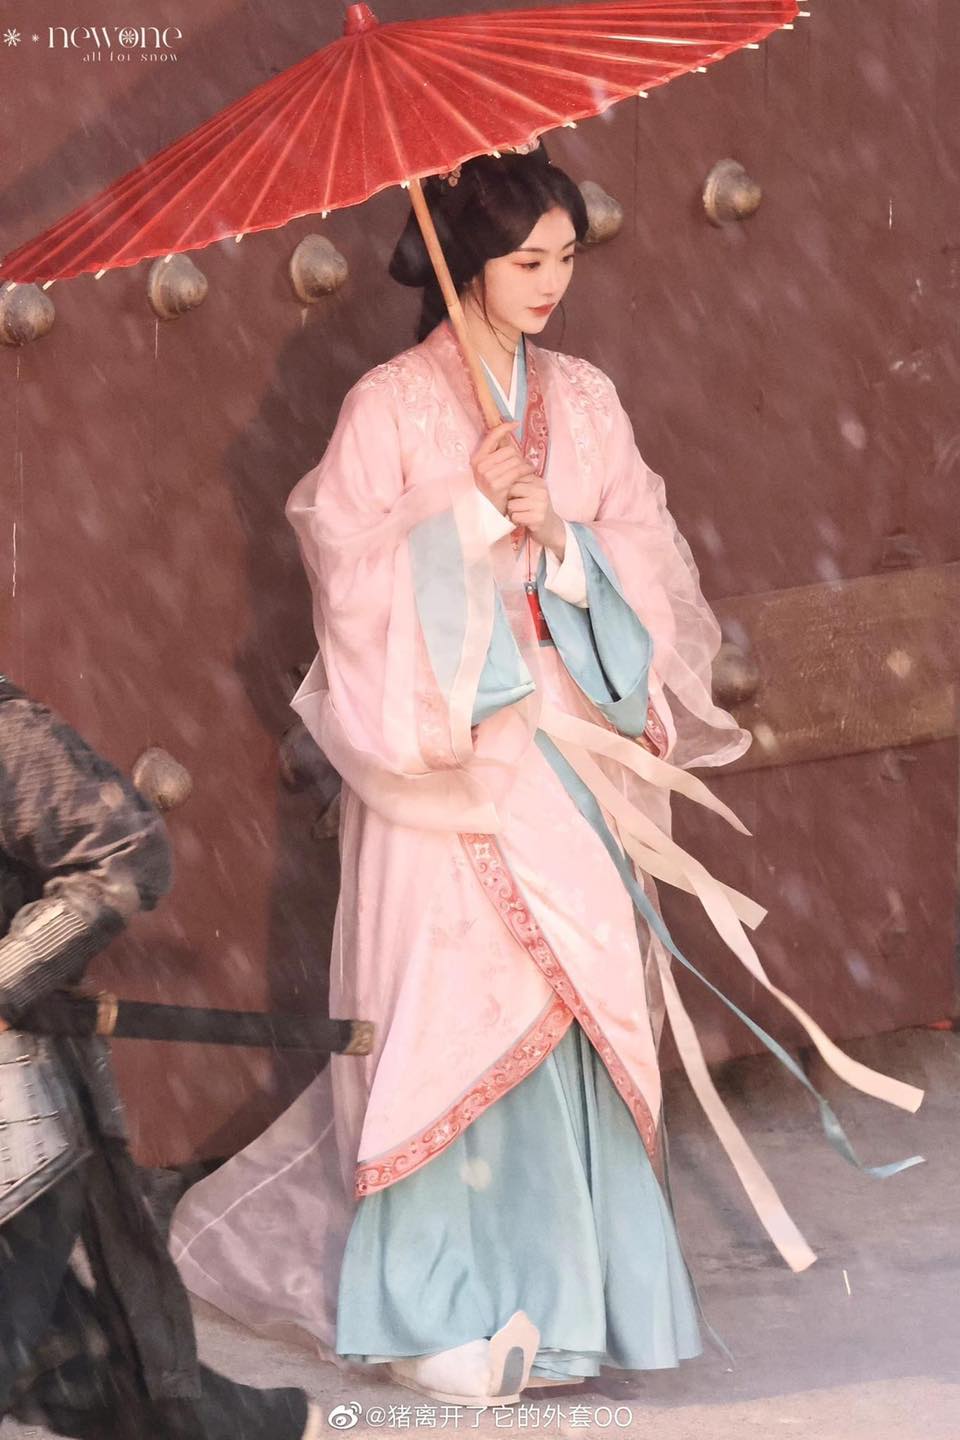 Khổng Tuyết Nhi đẹp như tranh vẽ, nhan sắc 'một chín một mười' với nữ chính Tống Tổ Nhi trên hậu trường Chiết Yêu - Ảnh 2